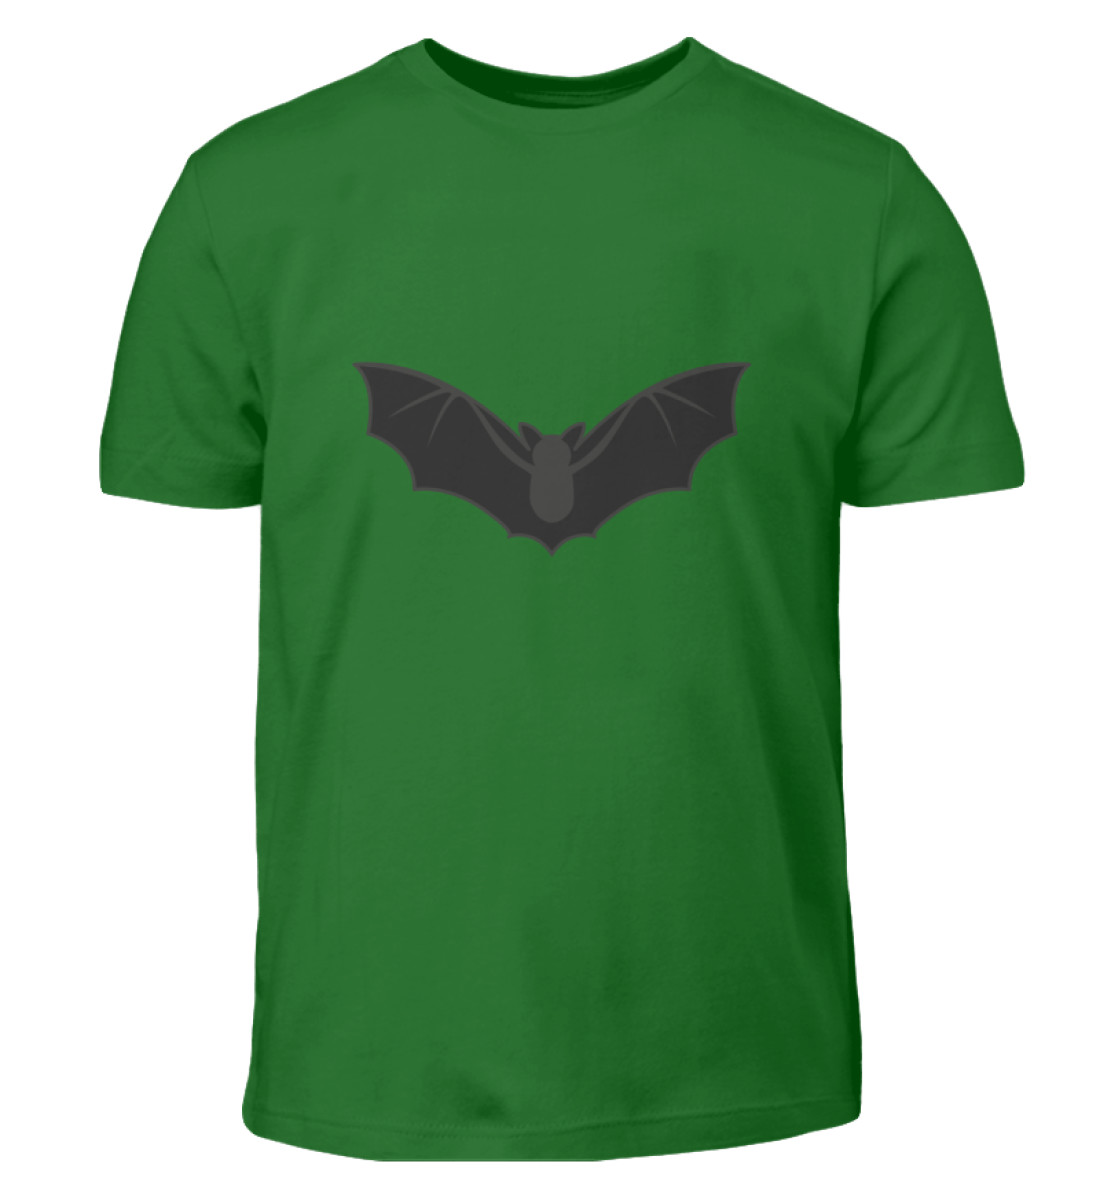 Fledermaus groß - Kinder T-Shirt-718